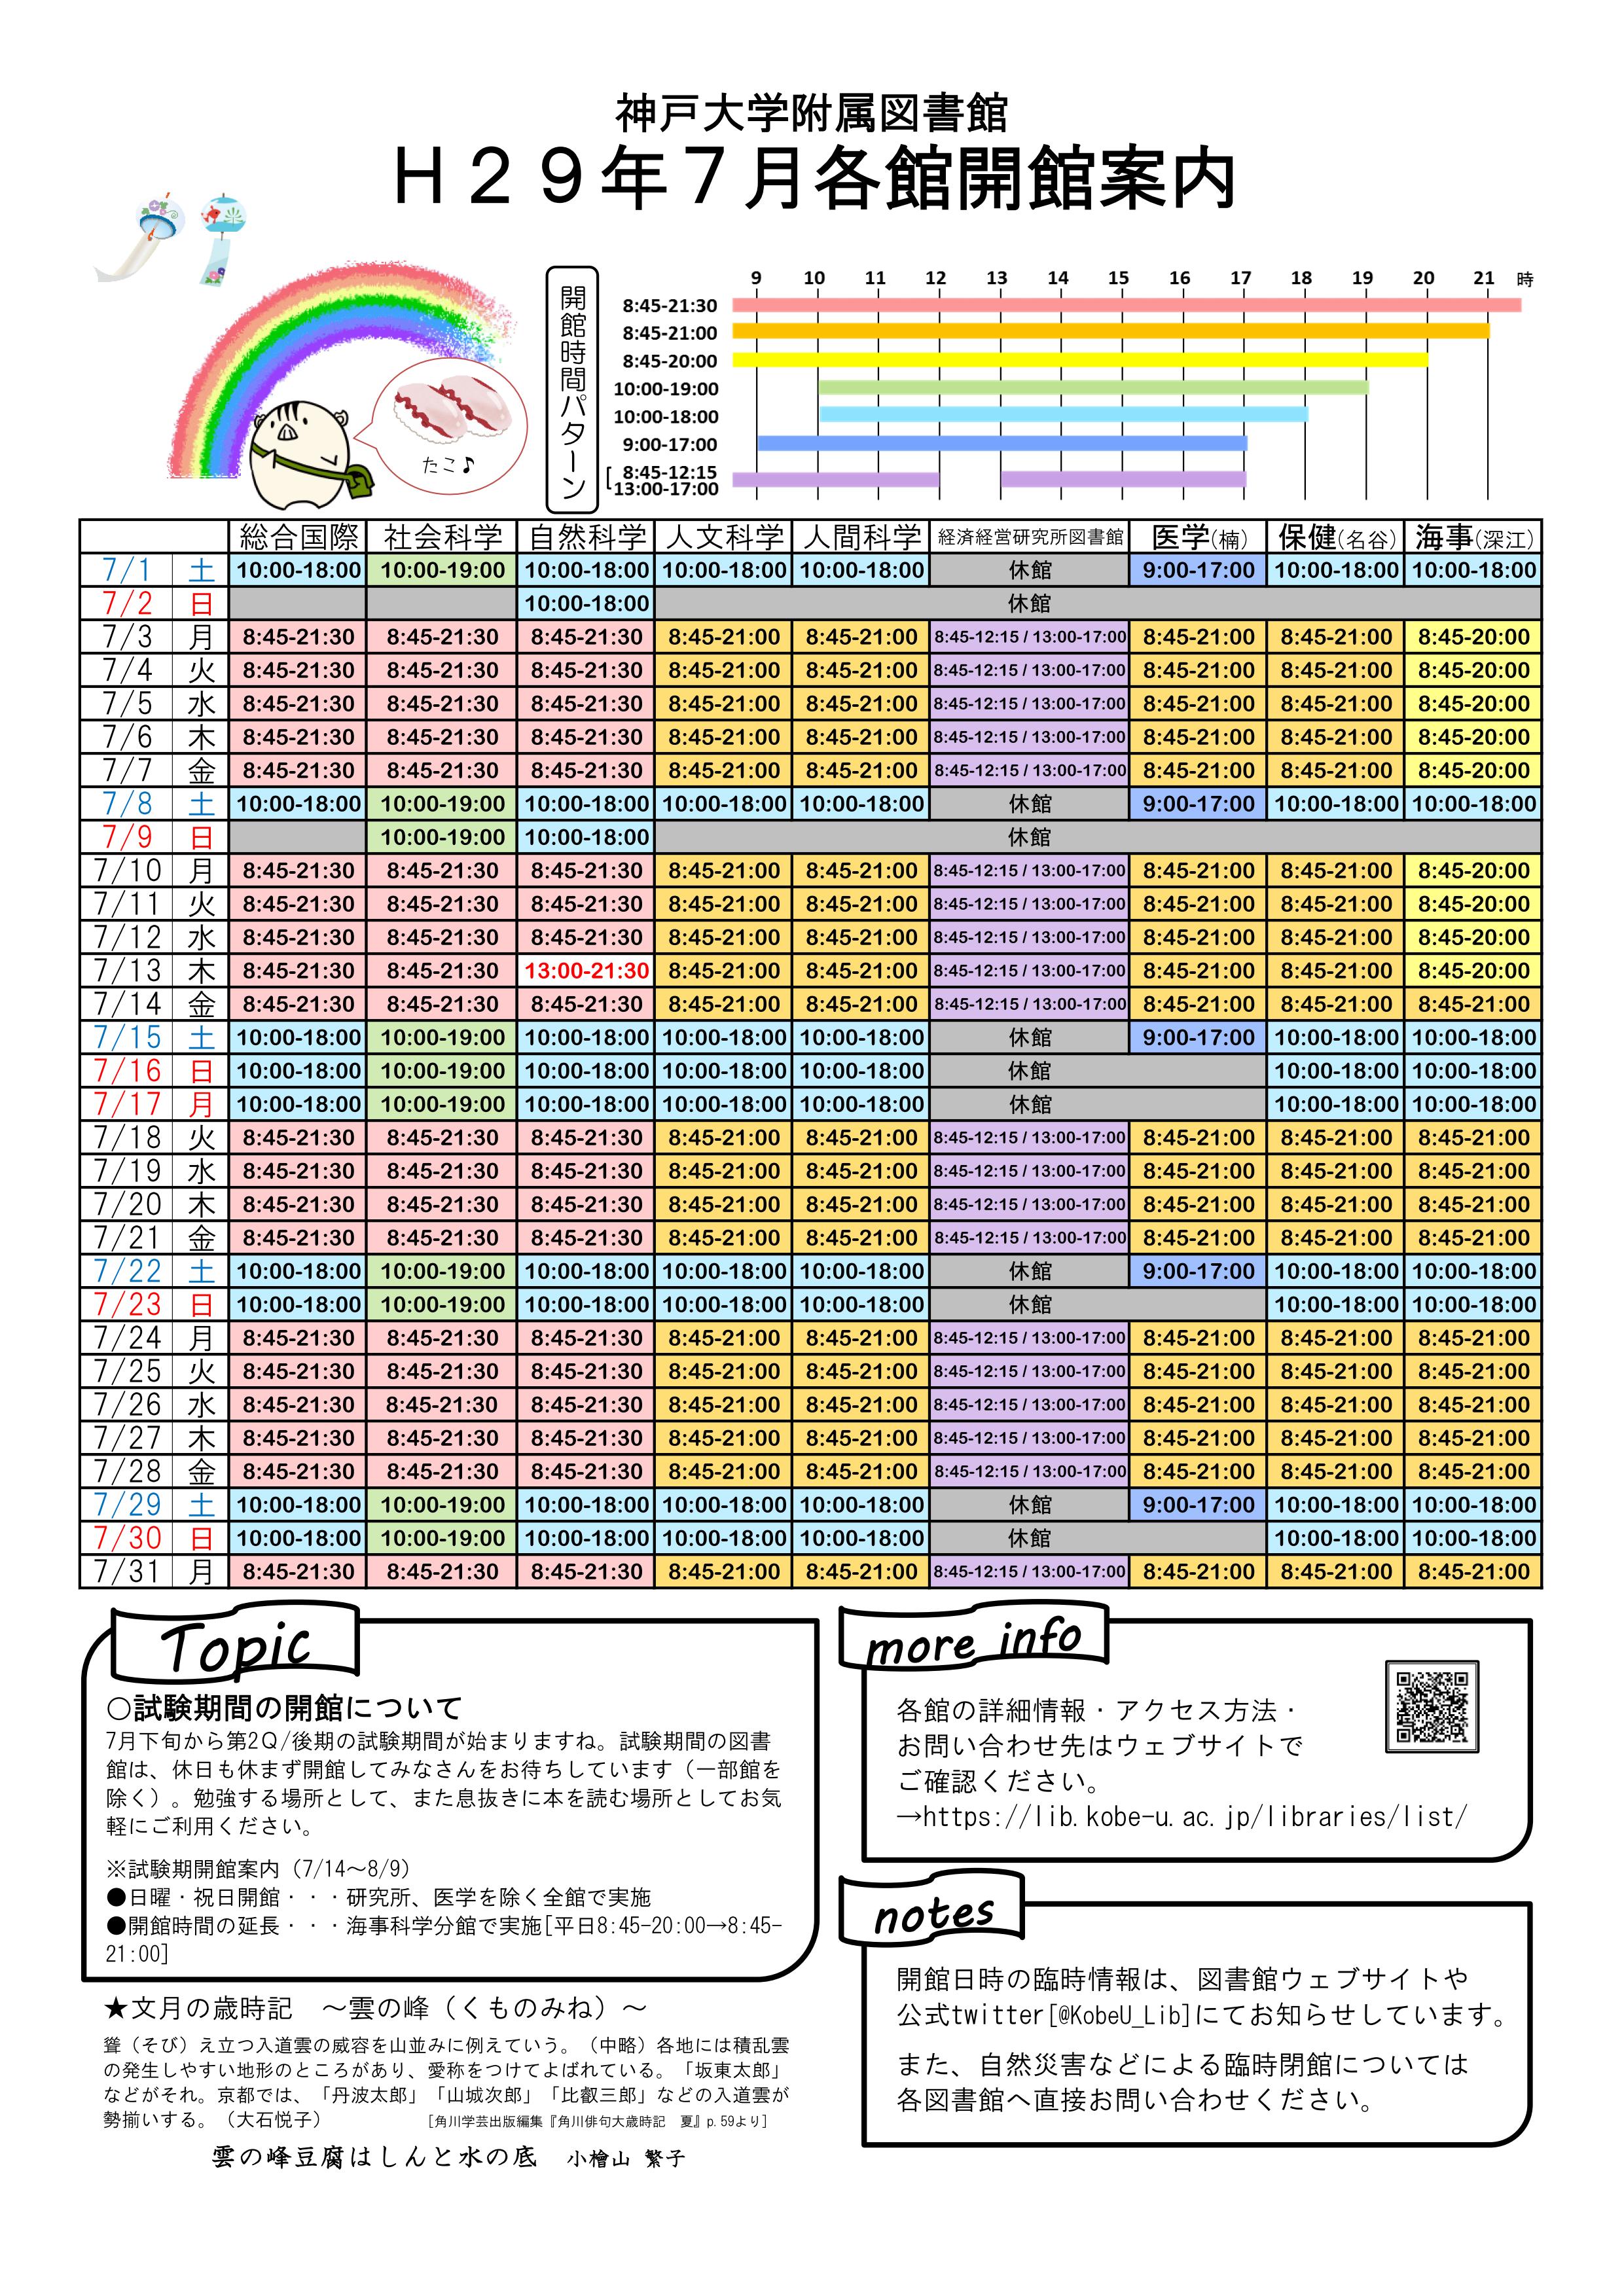 17年7月の全館開館カレンダーを作成しました 神戸大学附属図書館